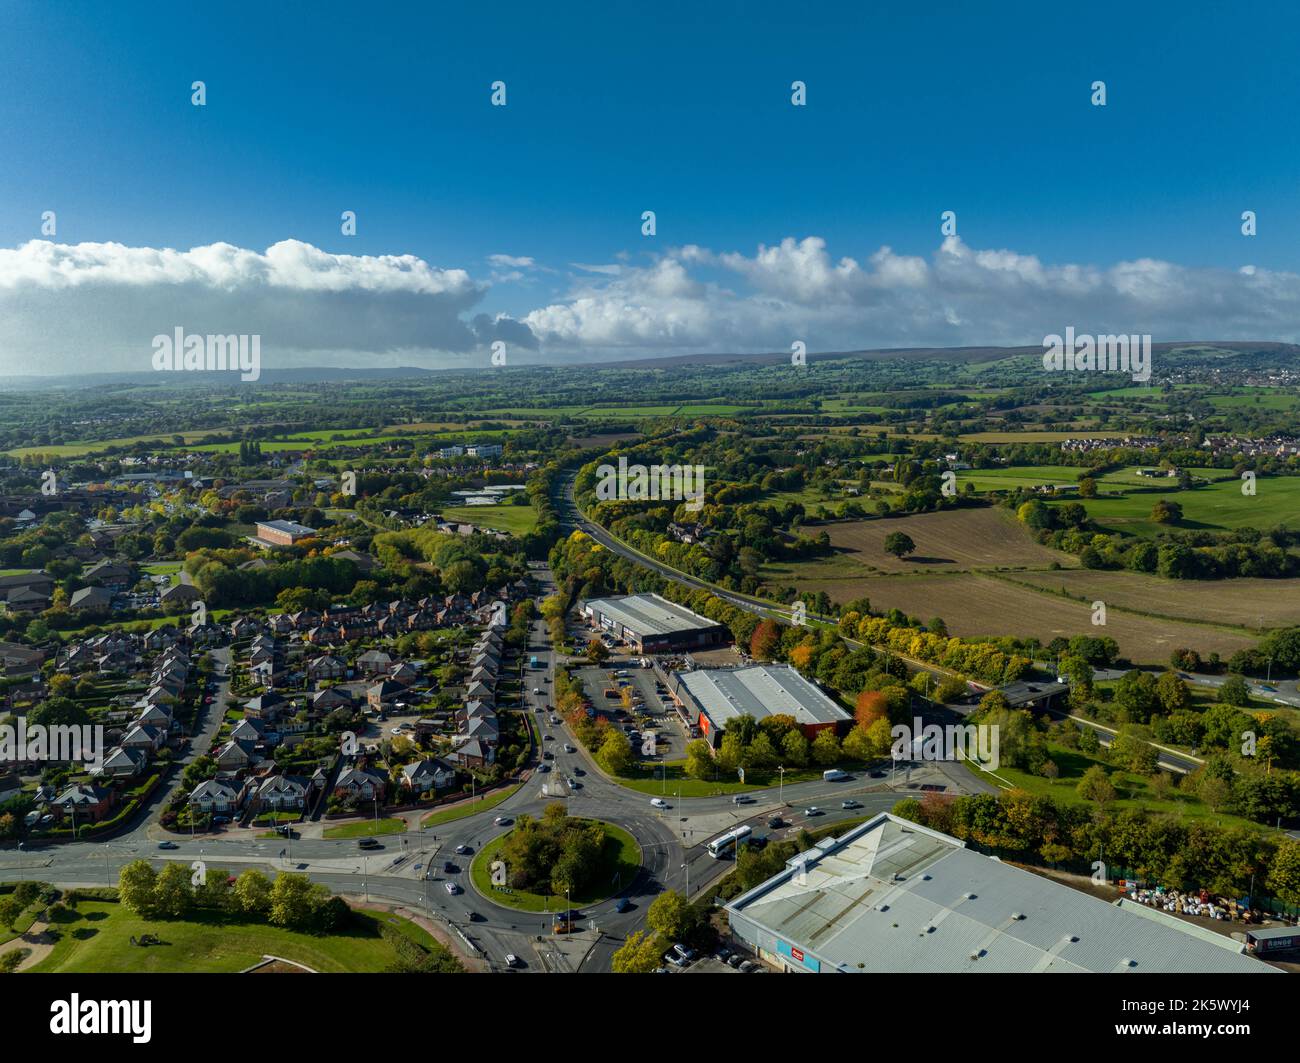 Willkommen im Wrexham Football Club, dem berühmten Pferderennbahn-Gelände des Deadpool-Stars Ryan Reynolds von der Air Aerial Drone Images, das Mcelhenney raubt Stockfoto